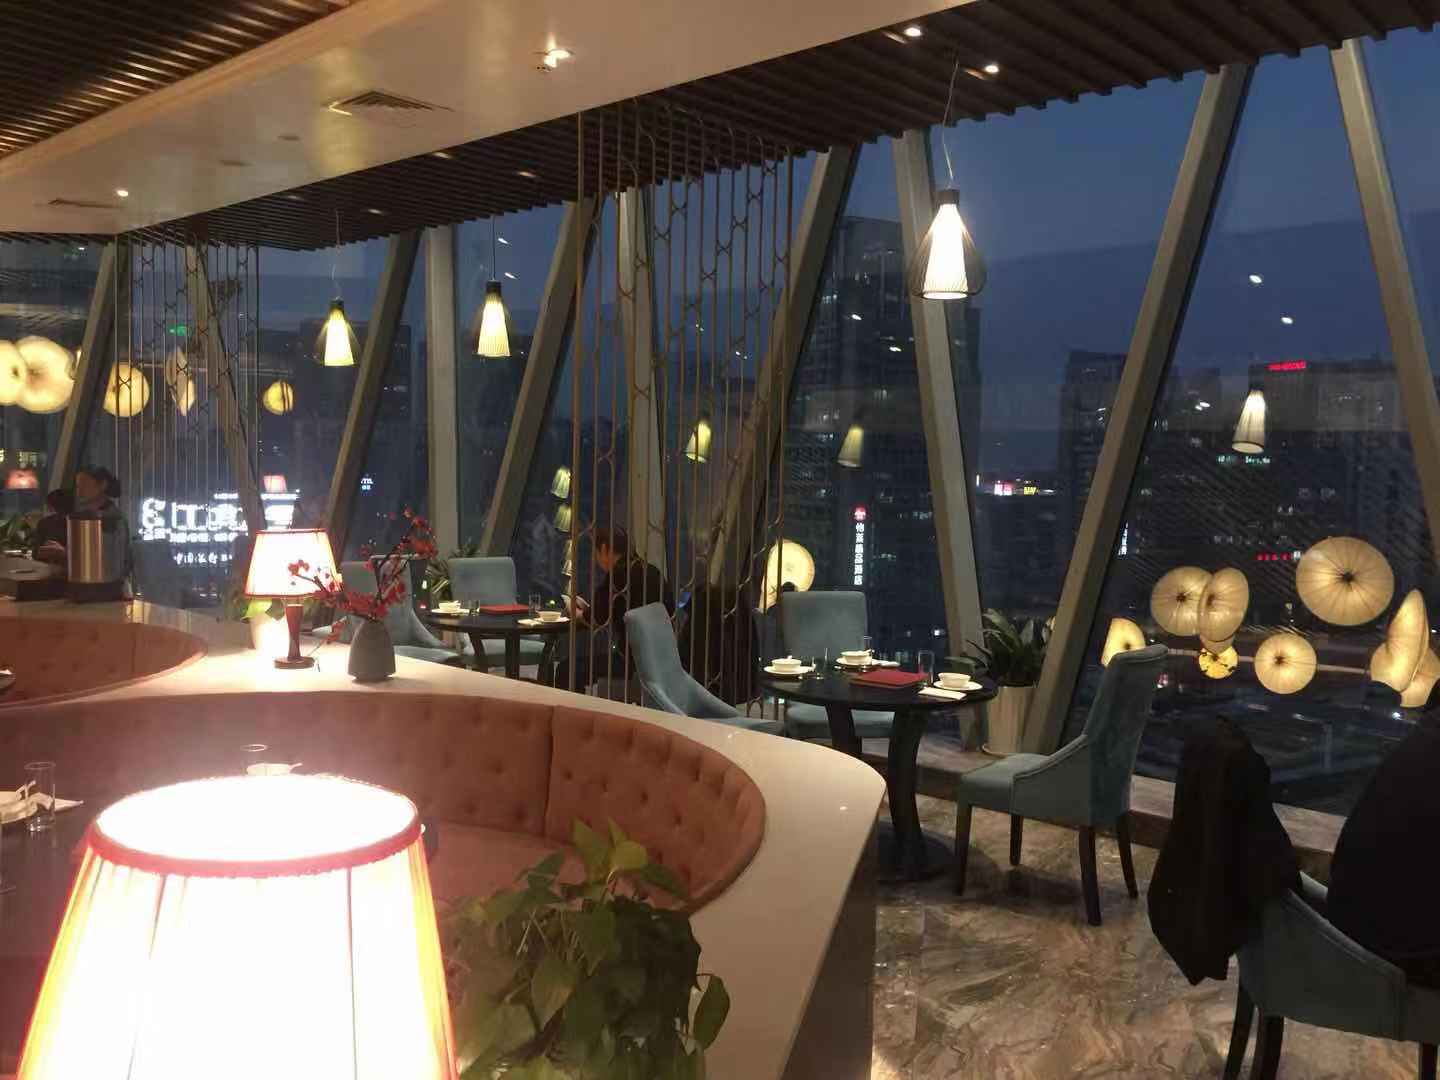 2022柒园·三十年创意杭帮菜(龙湖滨江天街店)美食餐厅,环境挺不错的